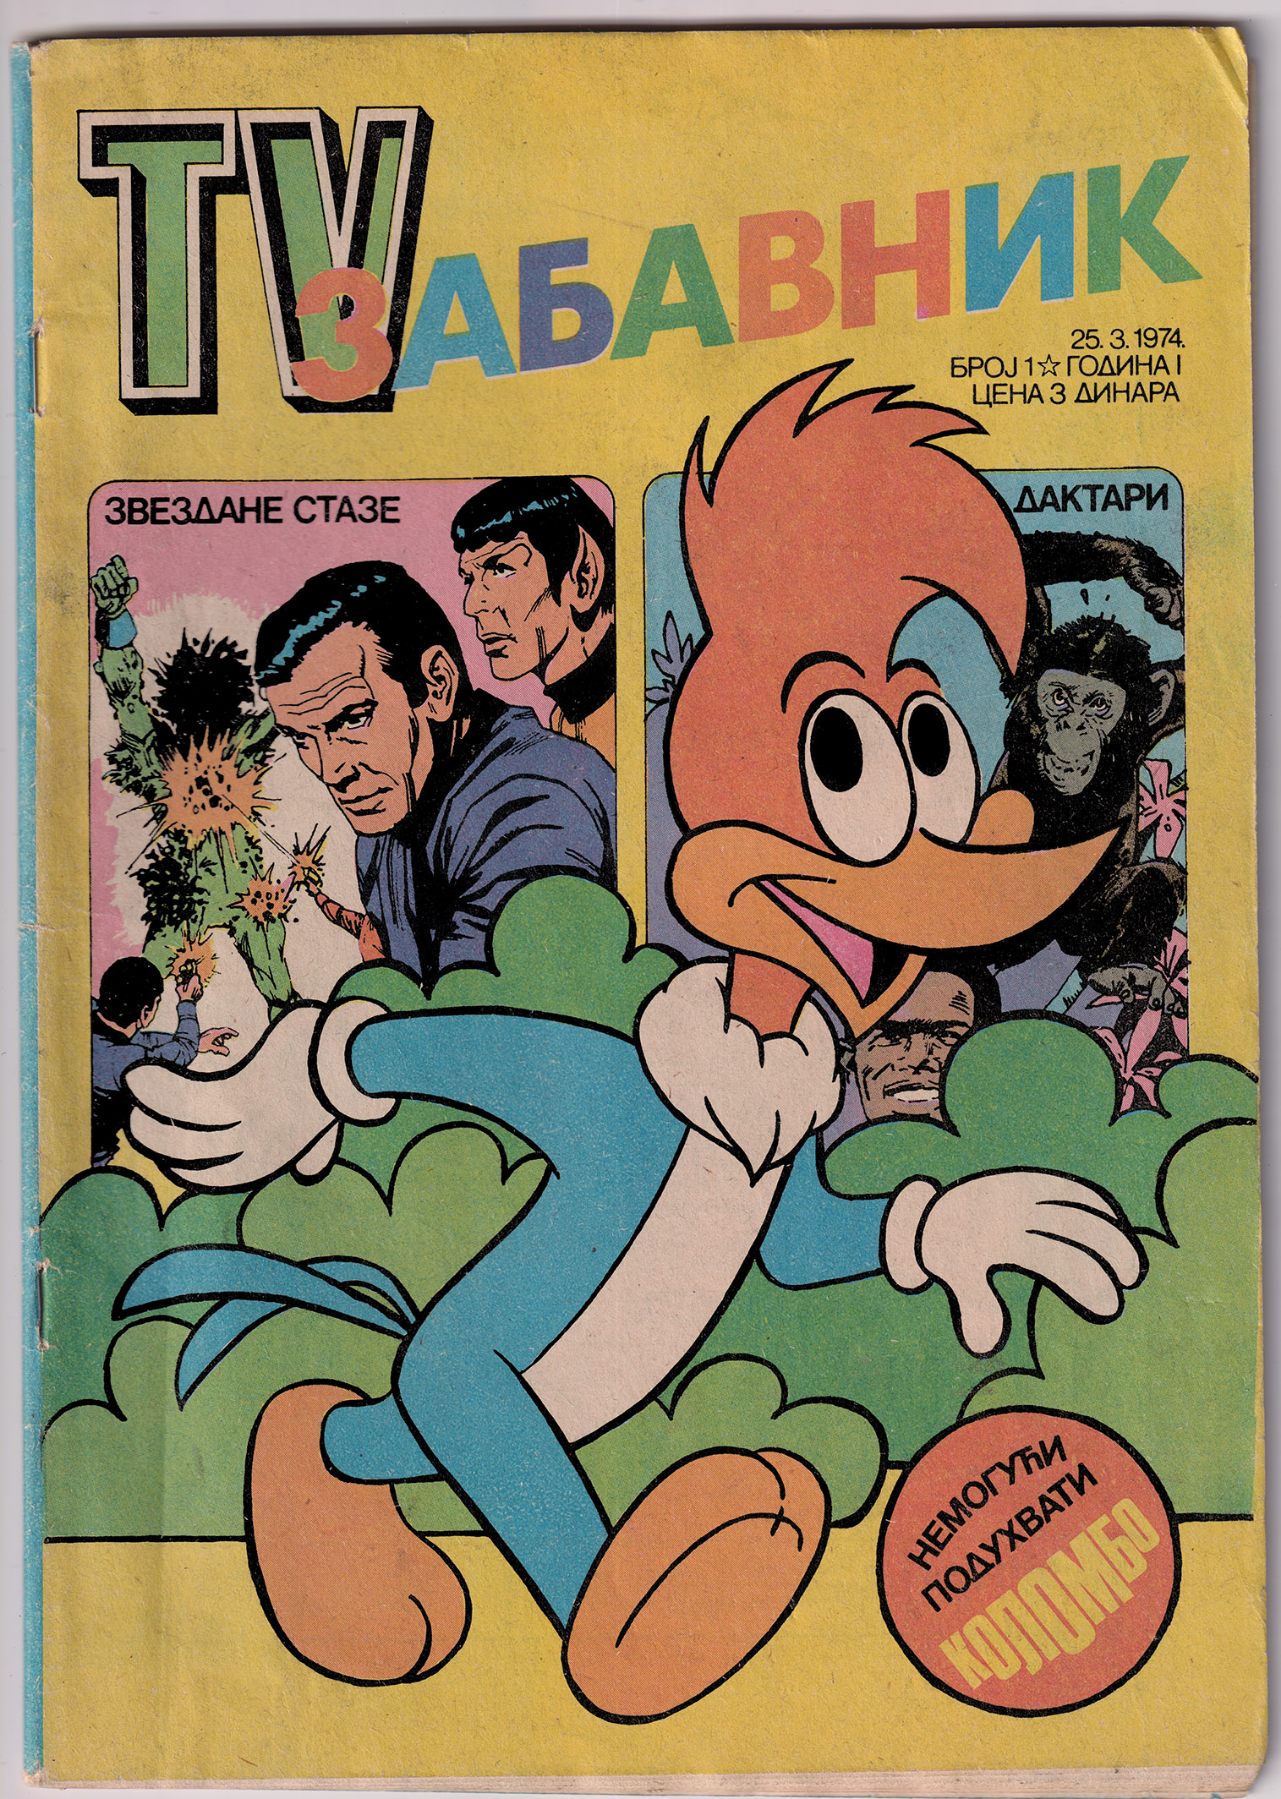 50 godina strip-magazina TV Zabavnik // Dom omladine Beograda //05.02.